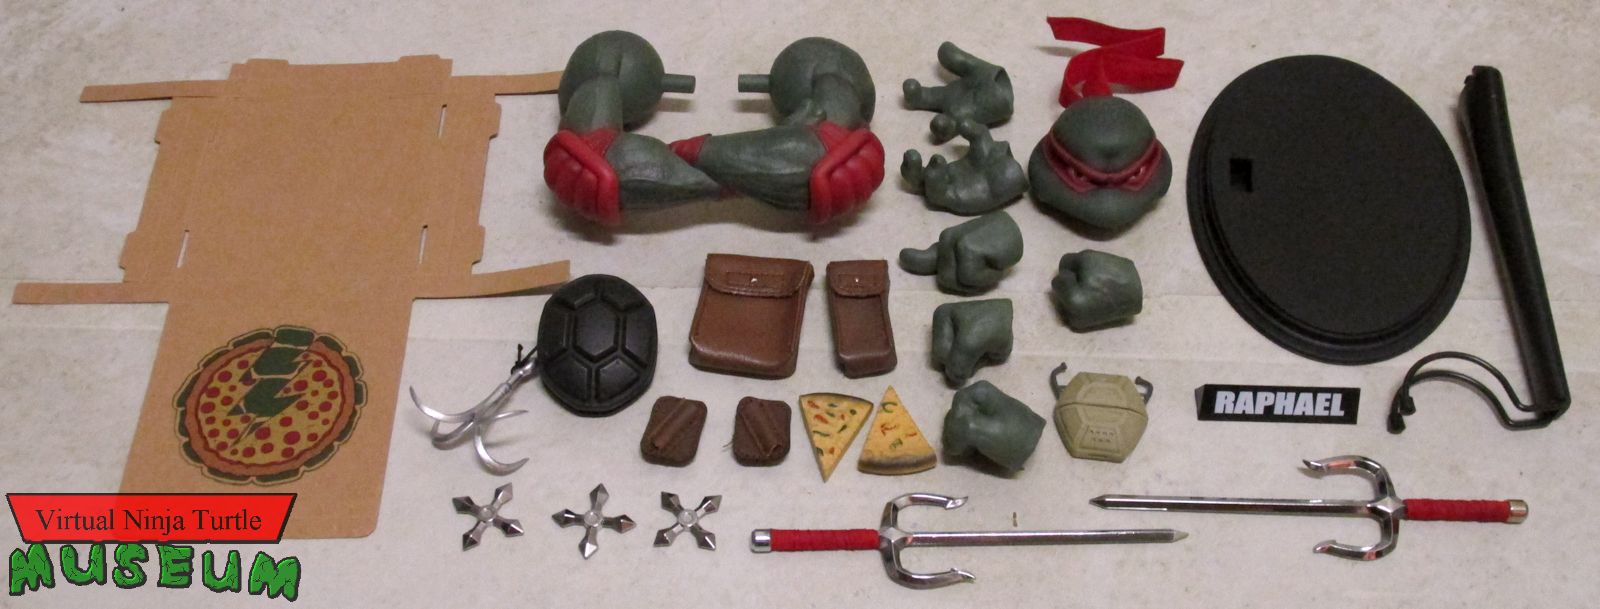 Raphael accessories